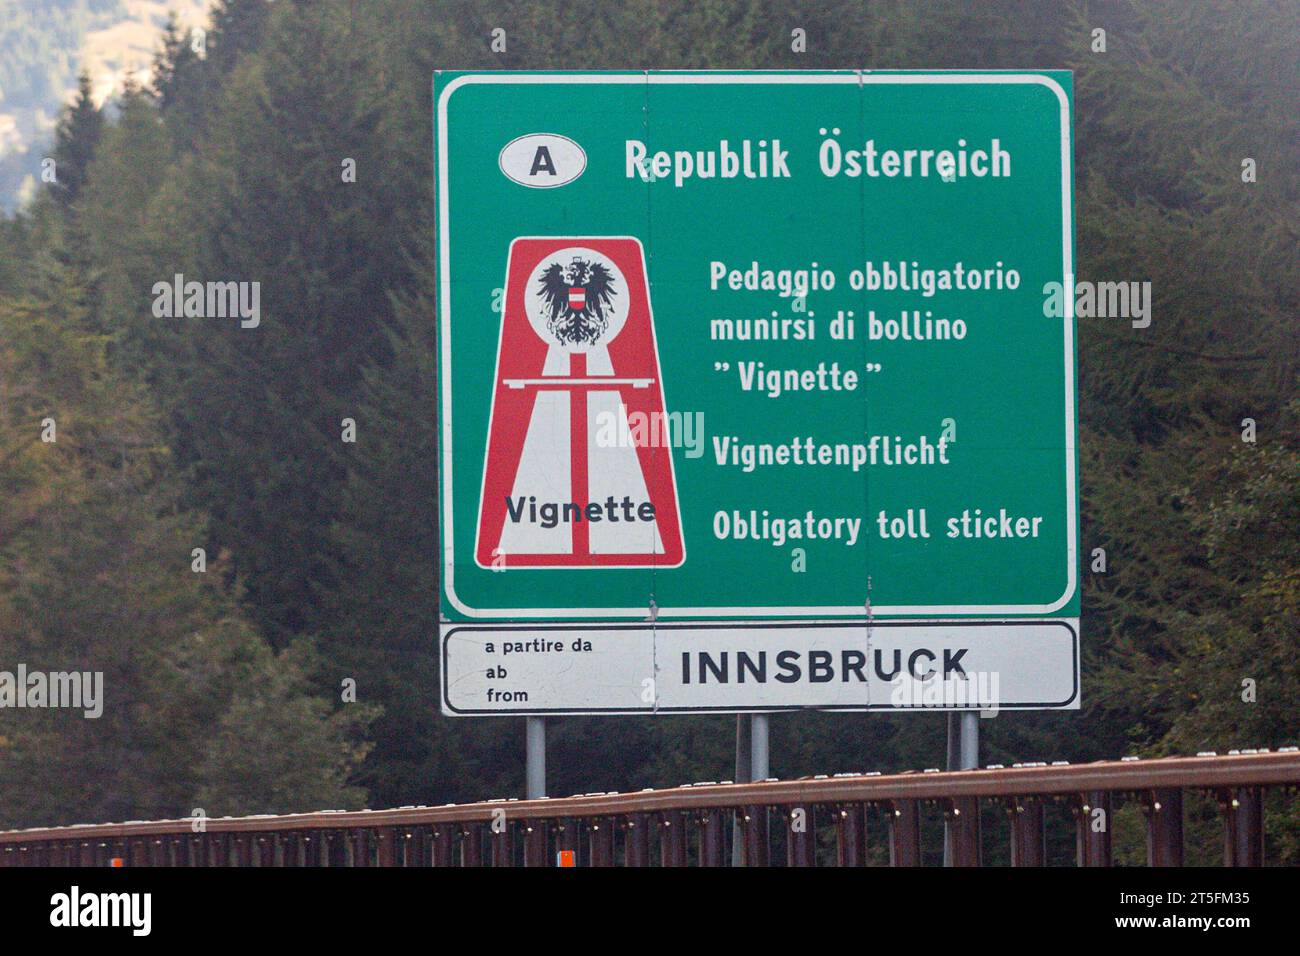 Schild Vignettenpflicht auf der A13 a Österreich bei Innsbruck. Vignettepflicht *** firma Vignette obbligo sulla A13 in Austria vicino Innsbruck Vignette obbligo credito: Imago/Alamy Live News Foto Stock